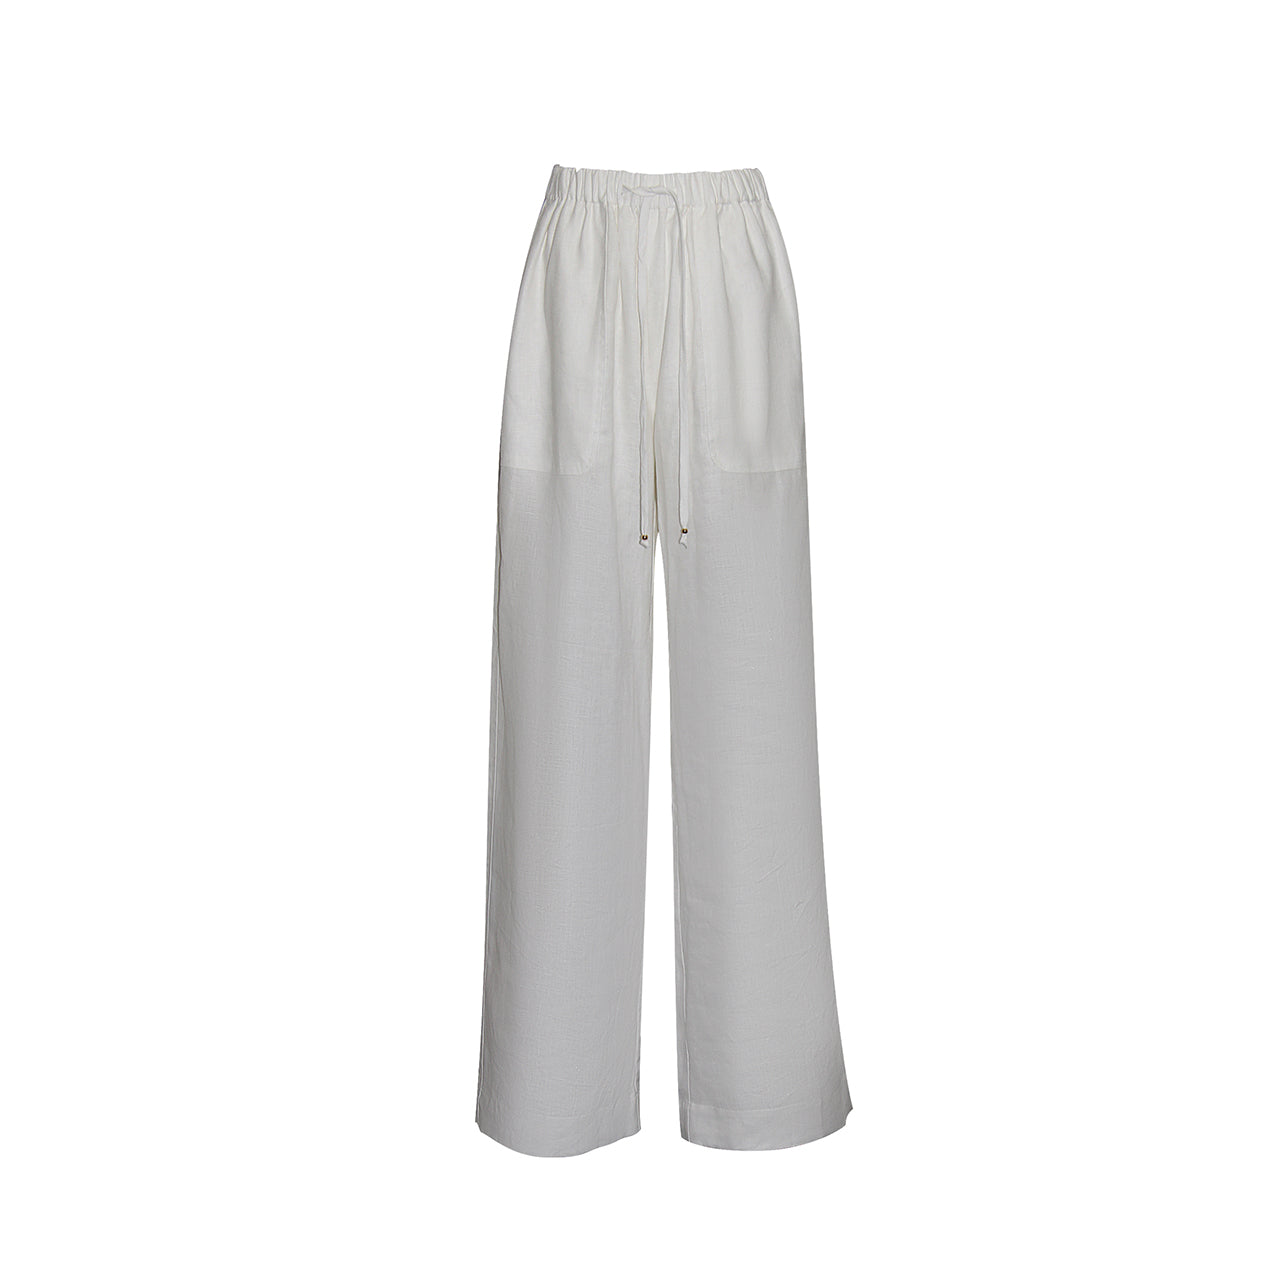 Discover SOFIA White Linen Pants by Gosia Orlowska